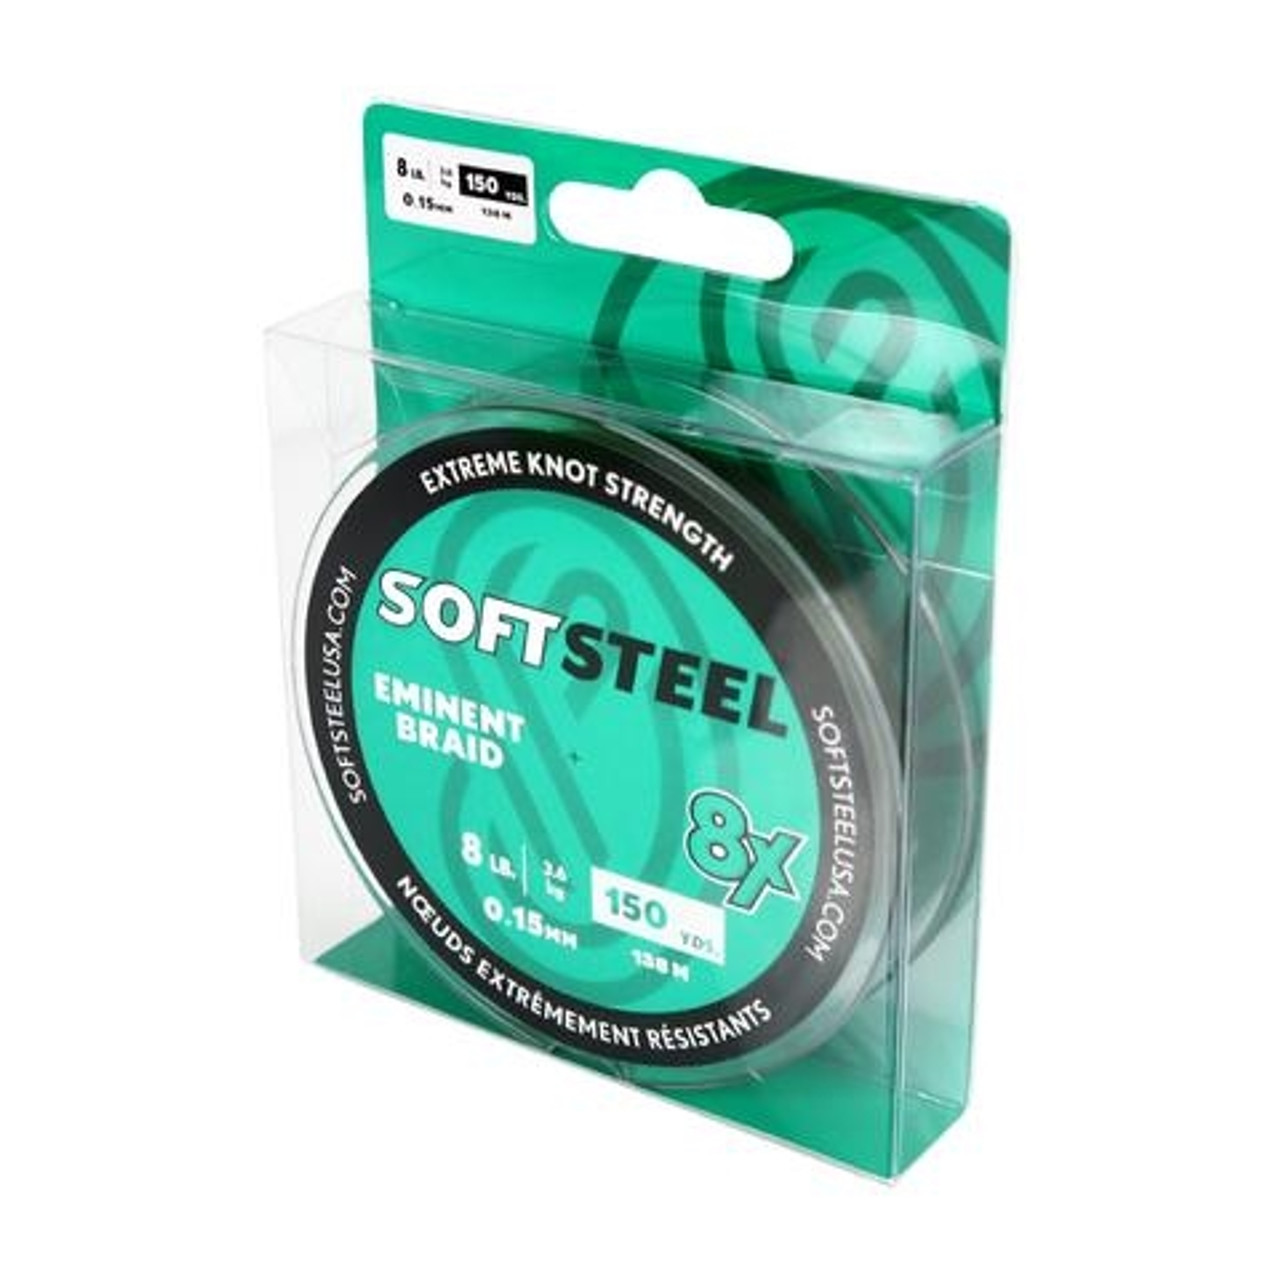 Soft Steel 8X Eminent Braided Line - 150yd Spool